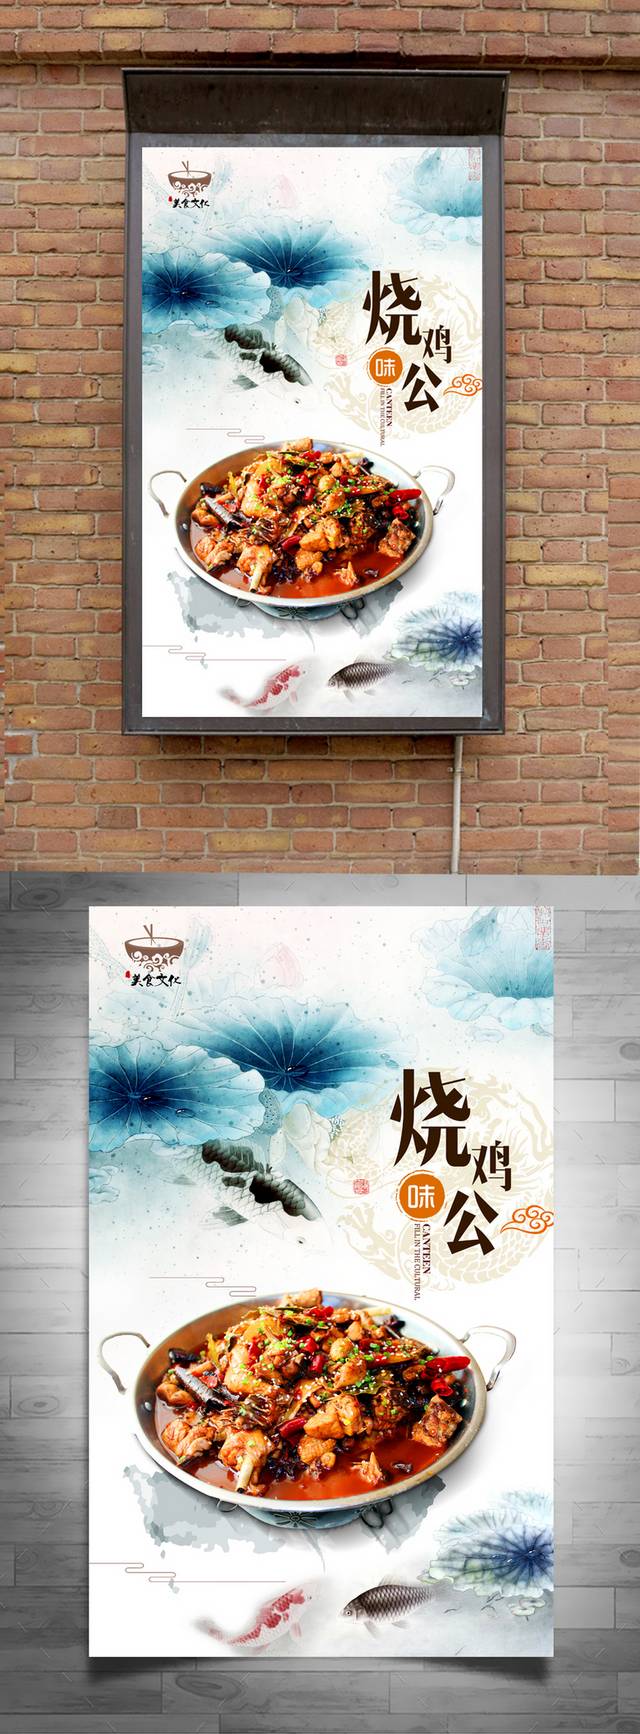 中国风郴州烧鸡公宣传海报设计